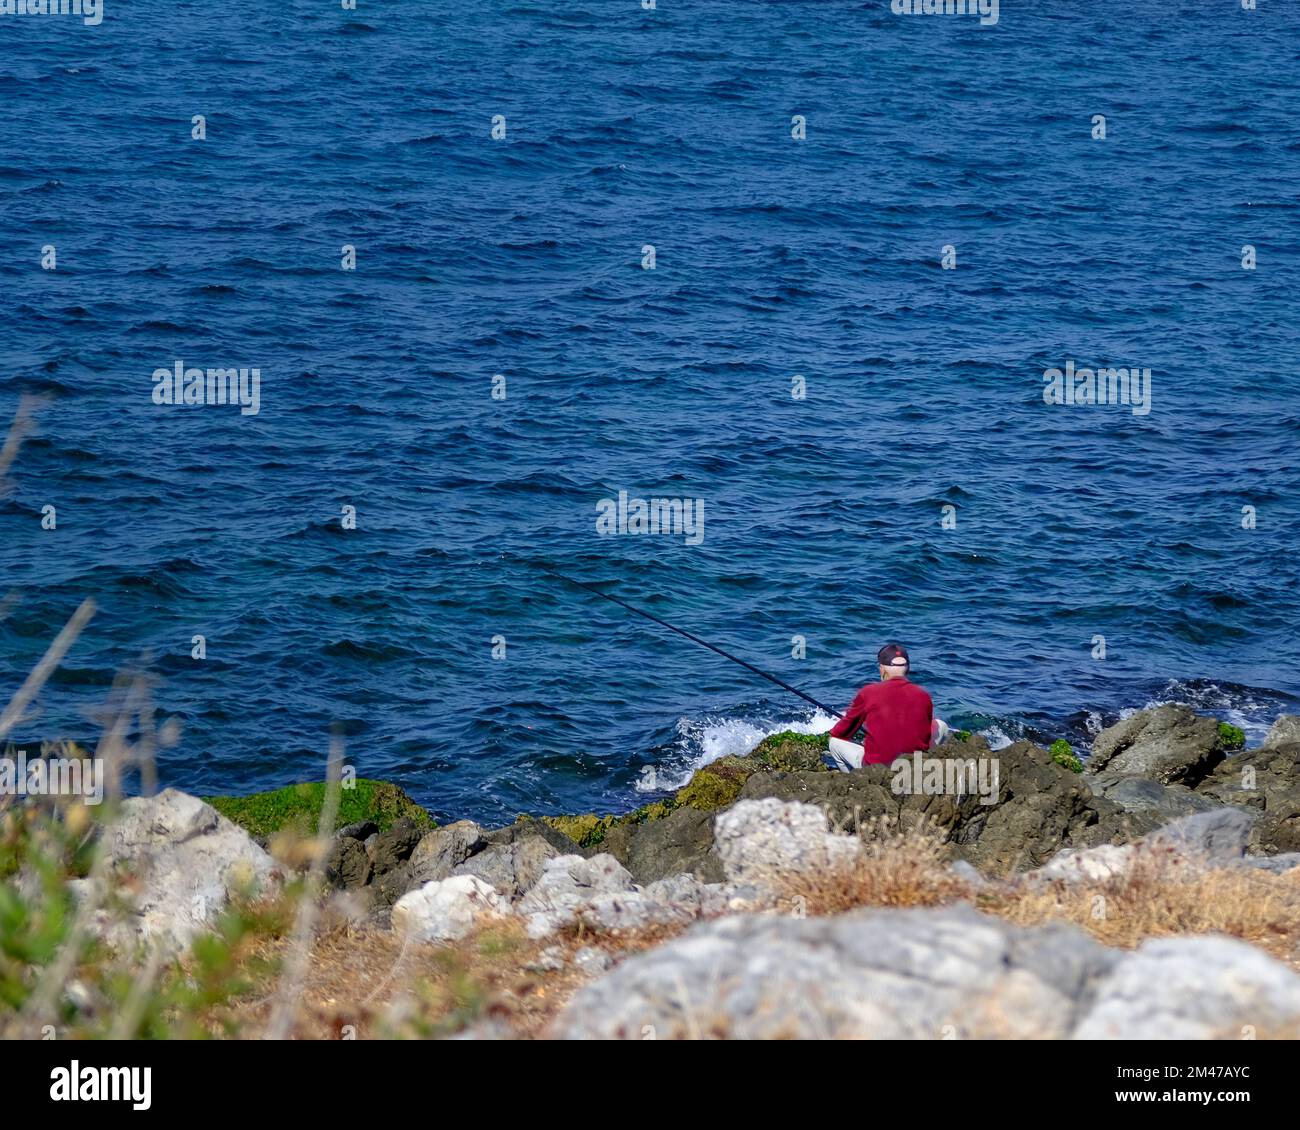 Pêcheur photographié en face de la mer en Grèce Banque D'Images